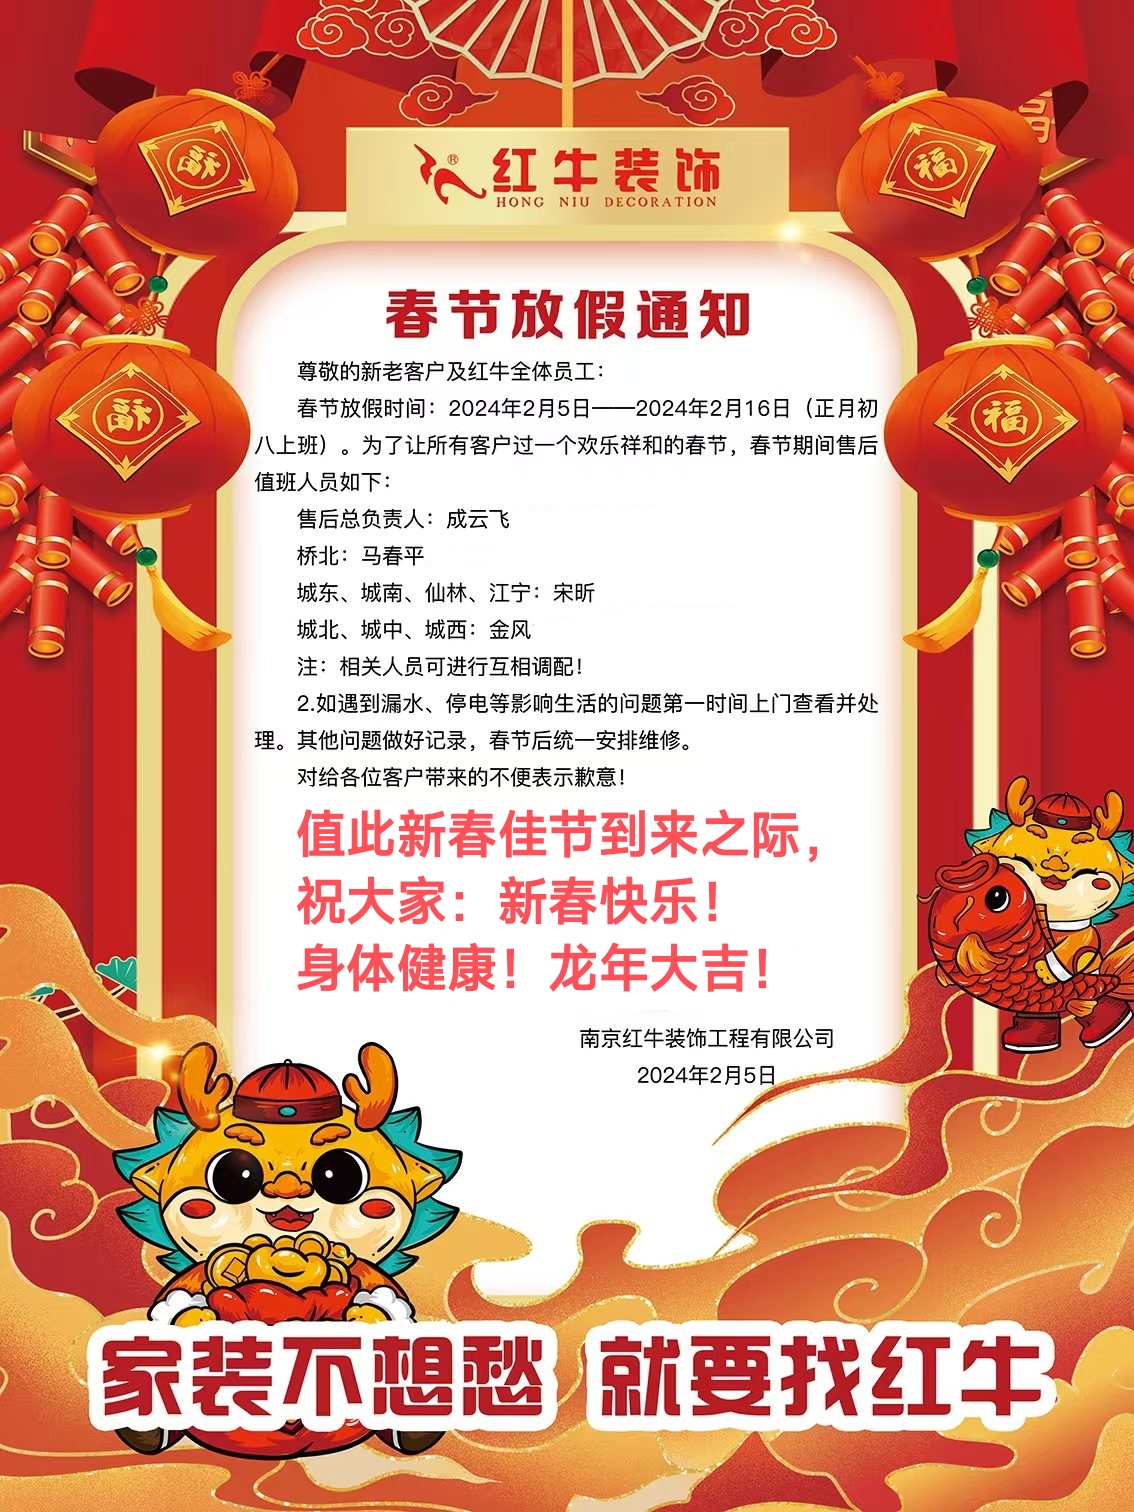 南京红牛装饰公司春节放假通知